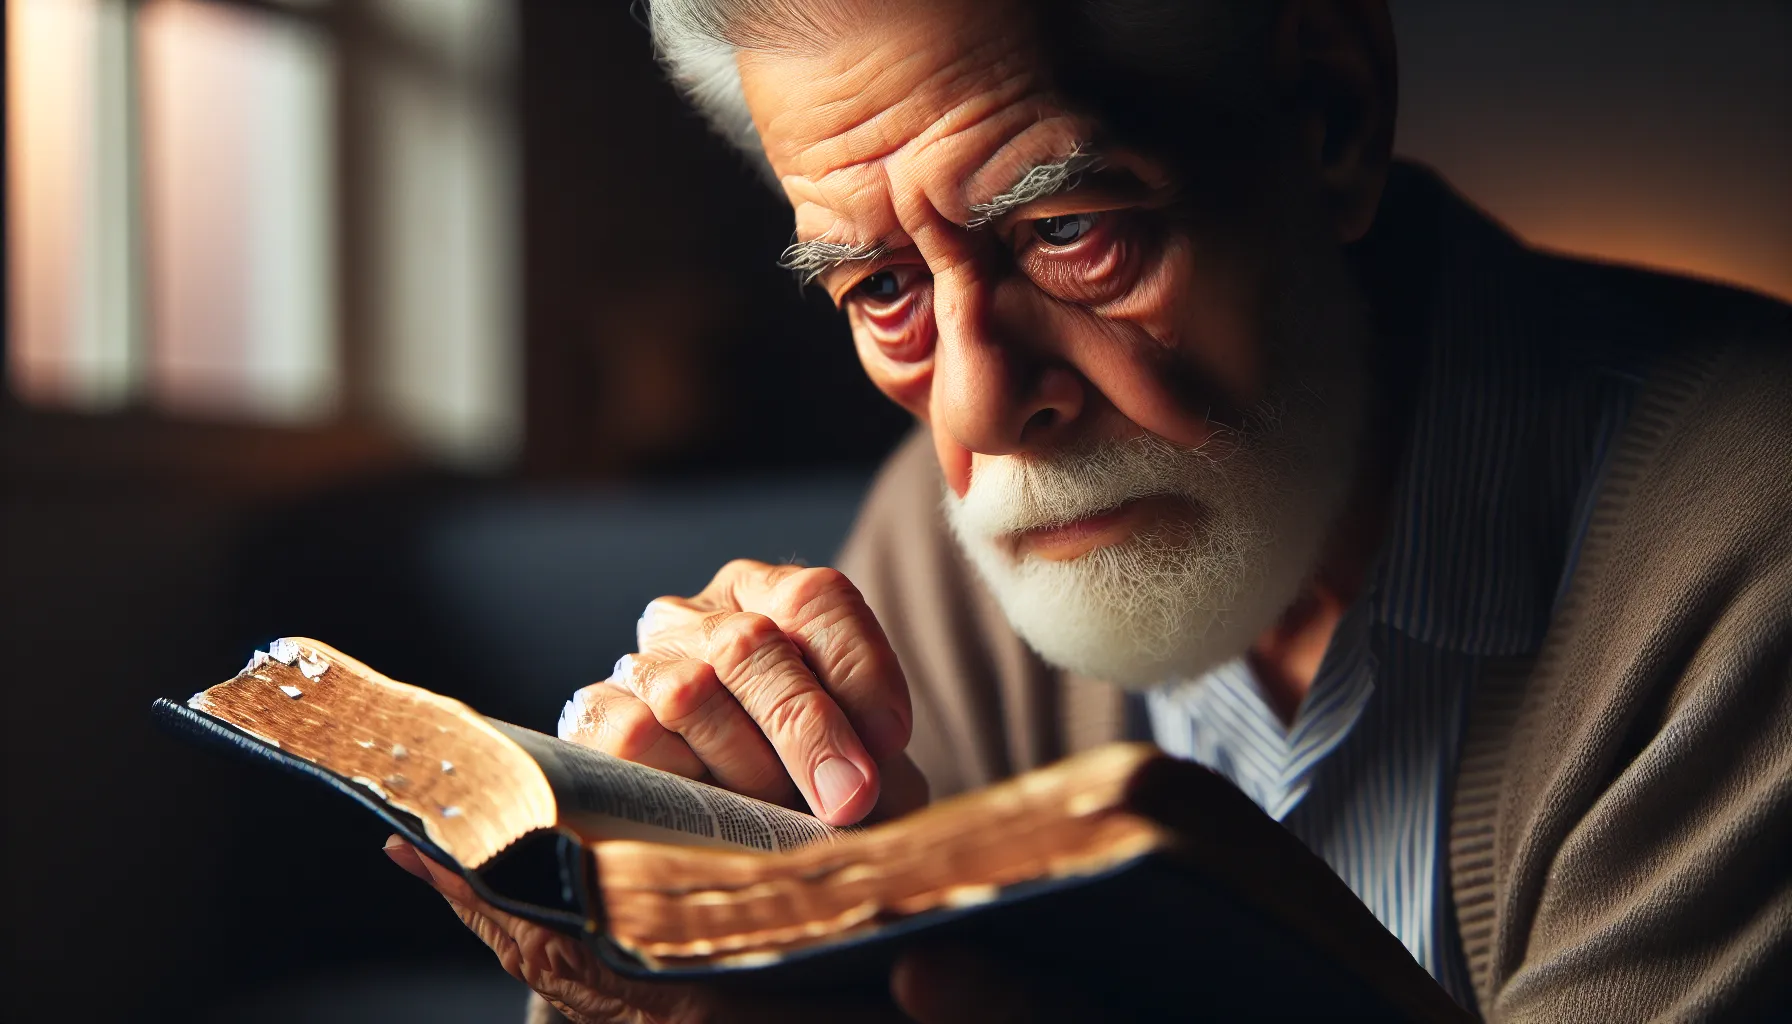 Una persona de edad avanzada leyendo una Biblia, ilustrando el tema del envejecimiento según las enseñanzas bíblicas.